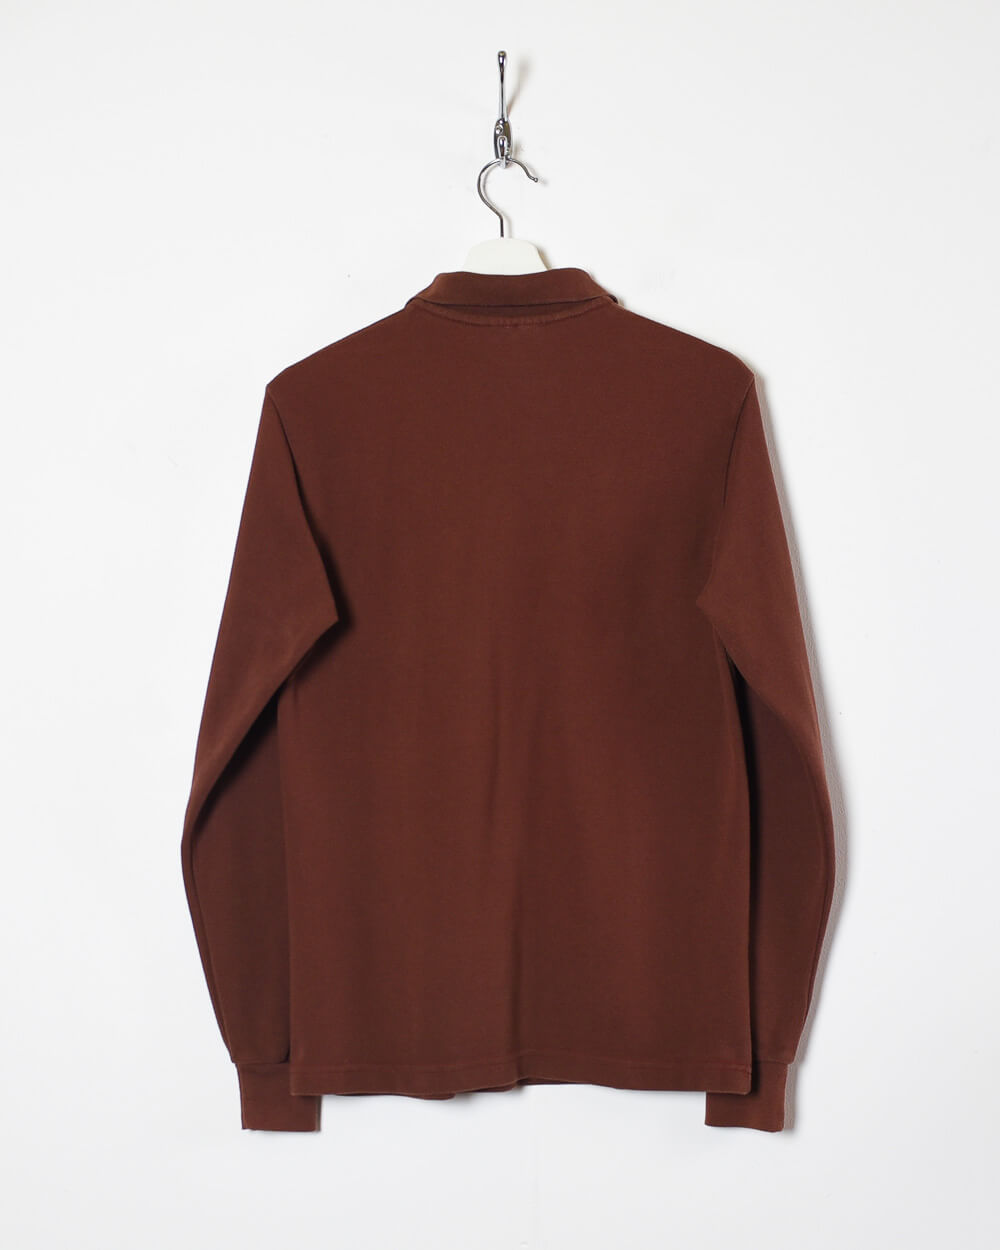 Brown Ralph Lauren Long Sleeved Polo Shirt - Medium